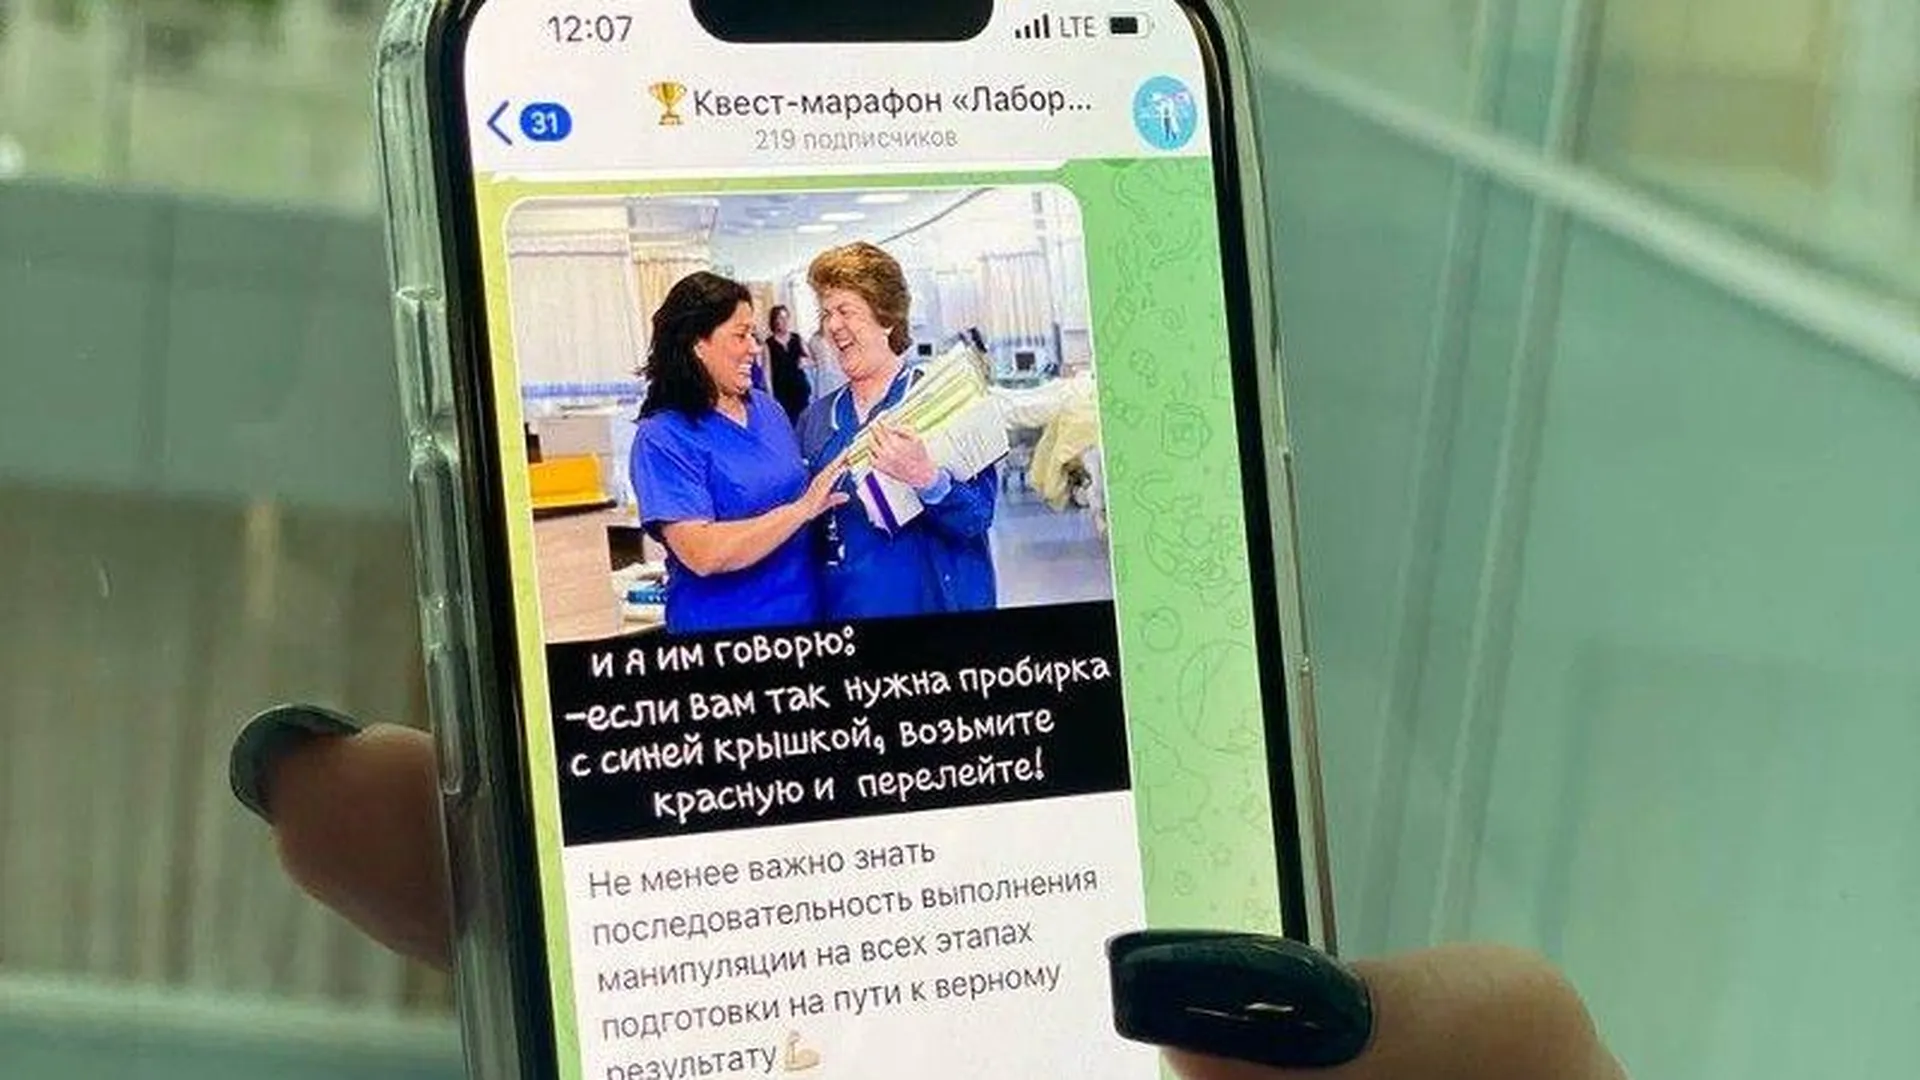 В Подмосковье стартовал онлайн квест-марафоны для врачей